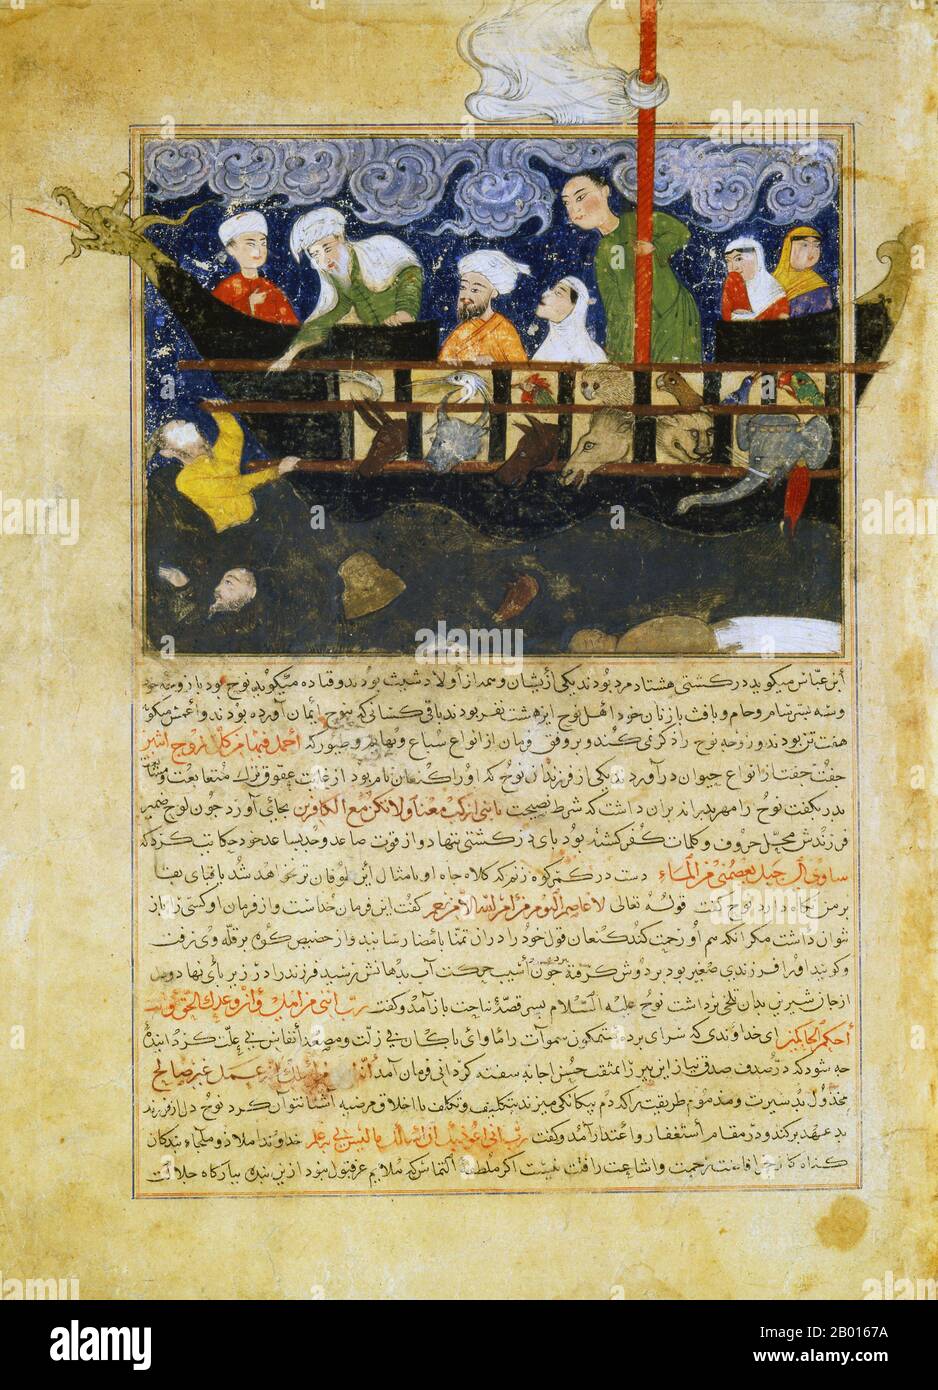 Afghanistan: Miniaturbild der Arche Noah, aus Hafiz-i Abru’s Majma al-tawarikh, c. 1425. Timurs Sohn Shah Rukh (1405-1447) befahl dem Historiker Hafiz-i Abru, eine Fortsetzung der berühmten Weltgeschichte Rashid al-DIN, Jami al-tawarikh, zu schreiben. Wie die Il-Khaniden ging es auch der Timuriden-Dynastie darum, ihr Recht auf Herrschaft zu legitimieren, und Hafiz-i Abrus „Eine Sammlung von Geschichten“ umfasst eine Periode, die die Zeit von Shah Rukh selbst einschloss. Stockfoto